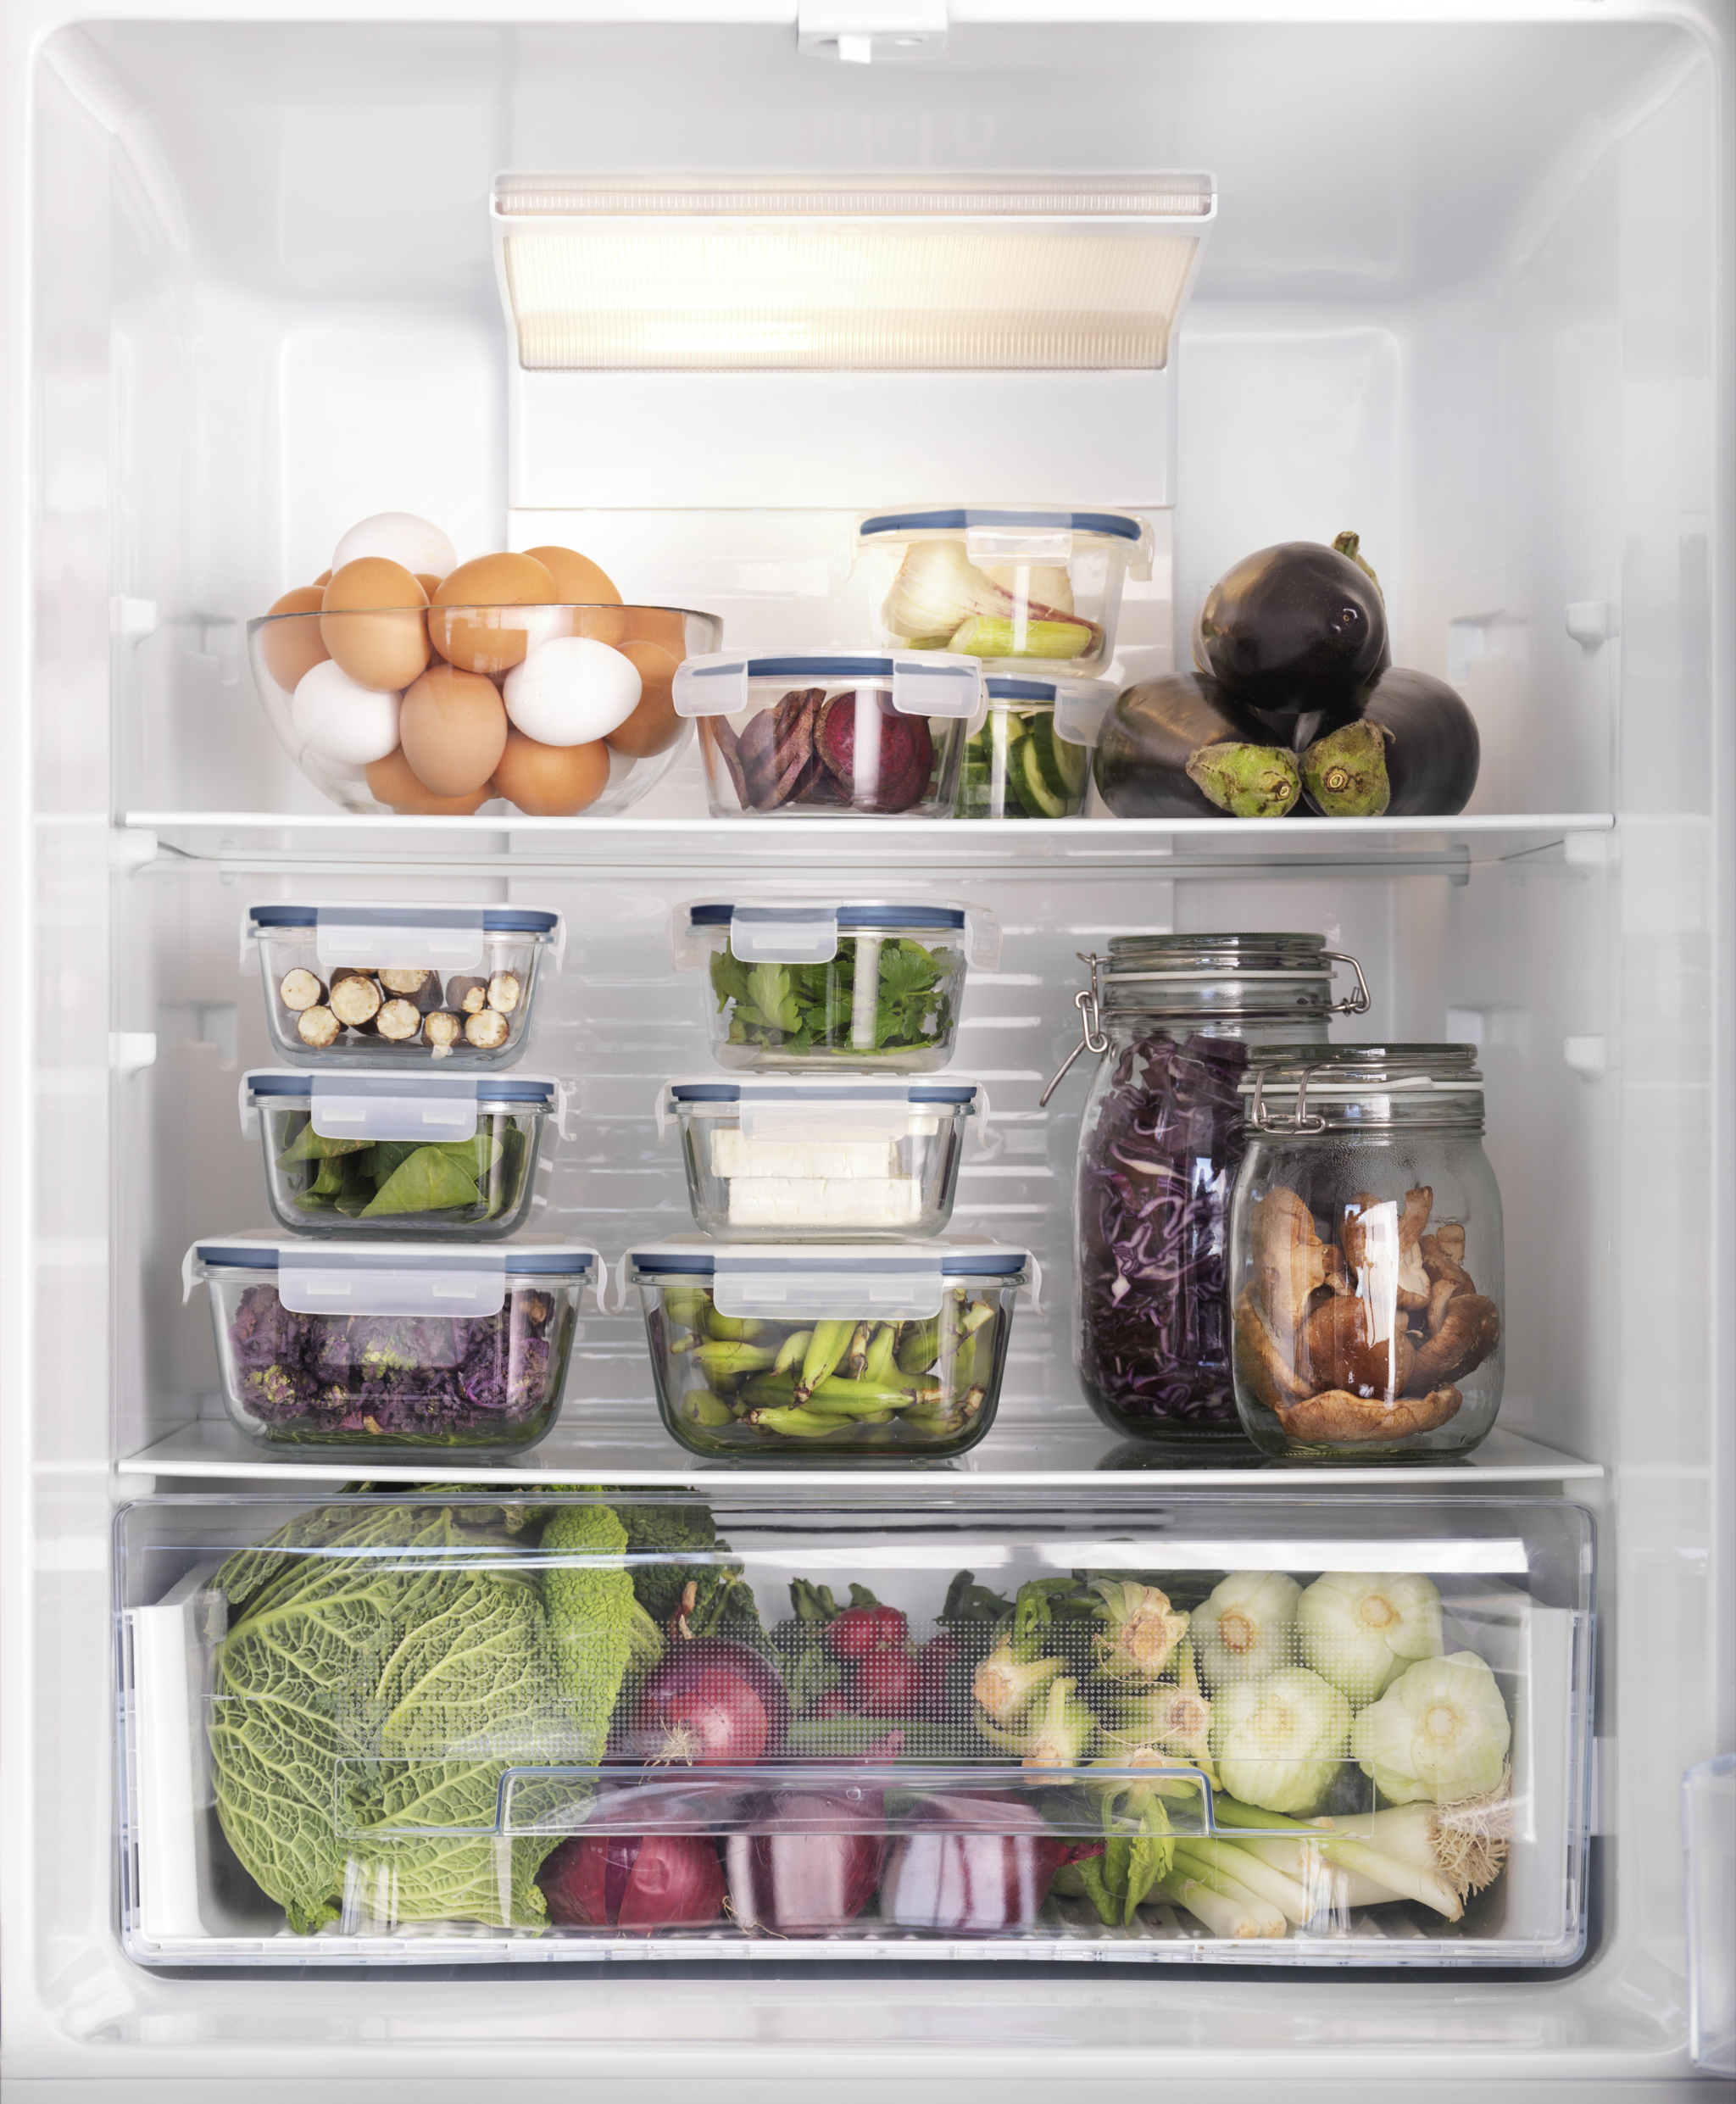 Llena tu frigorífico de frutas y verduras.